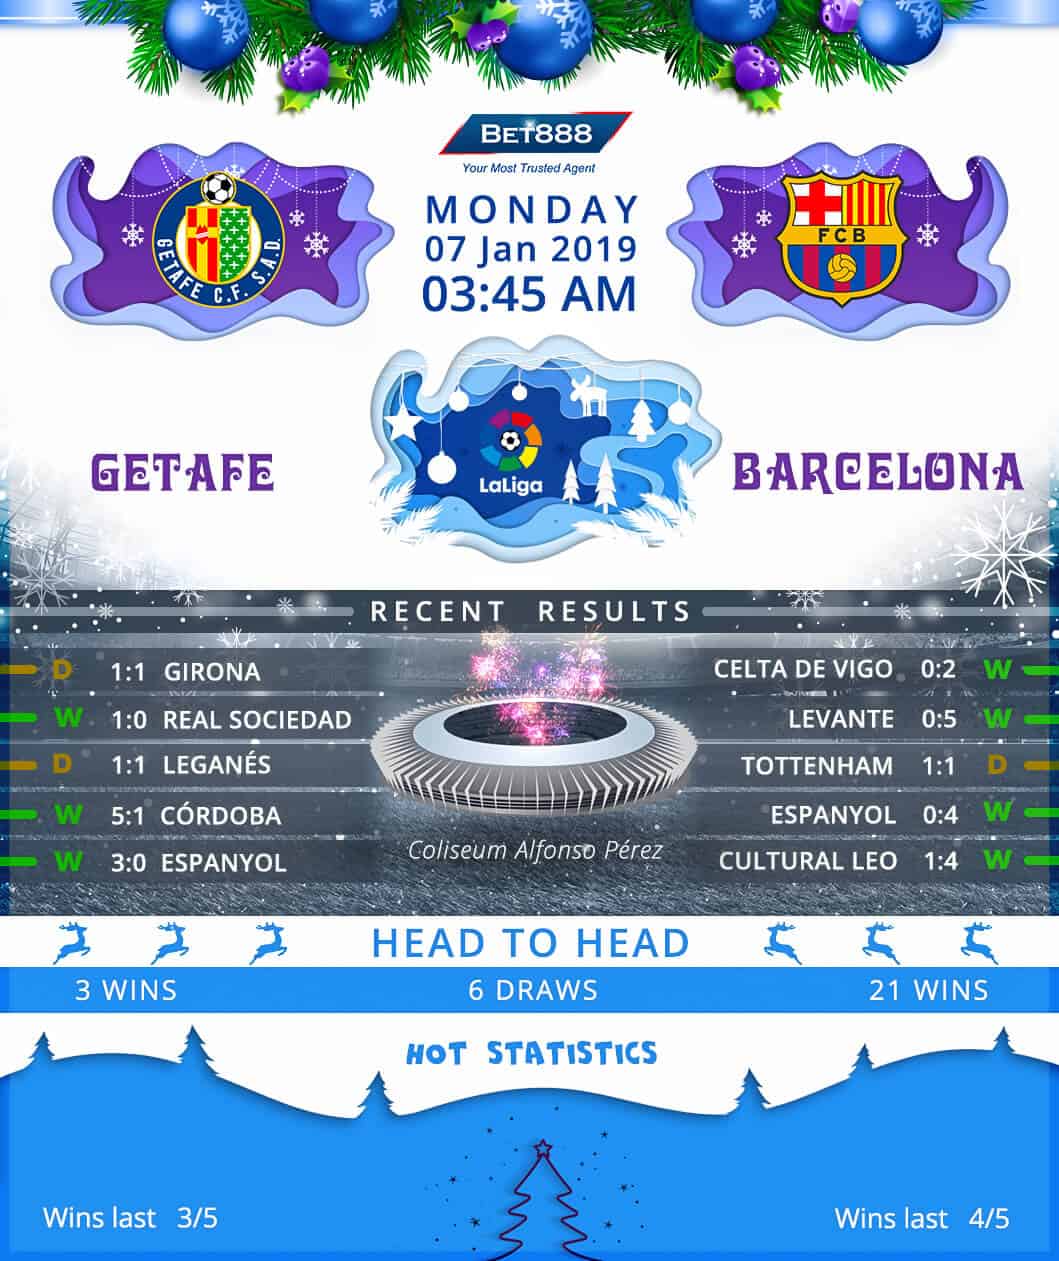 Getafe vs Barcelona 07/01/19